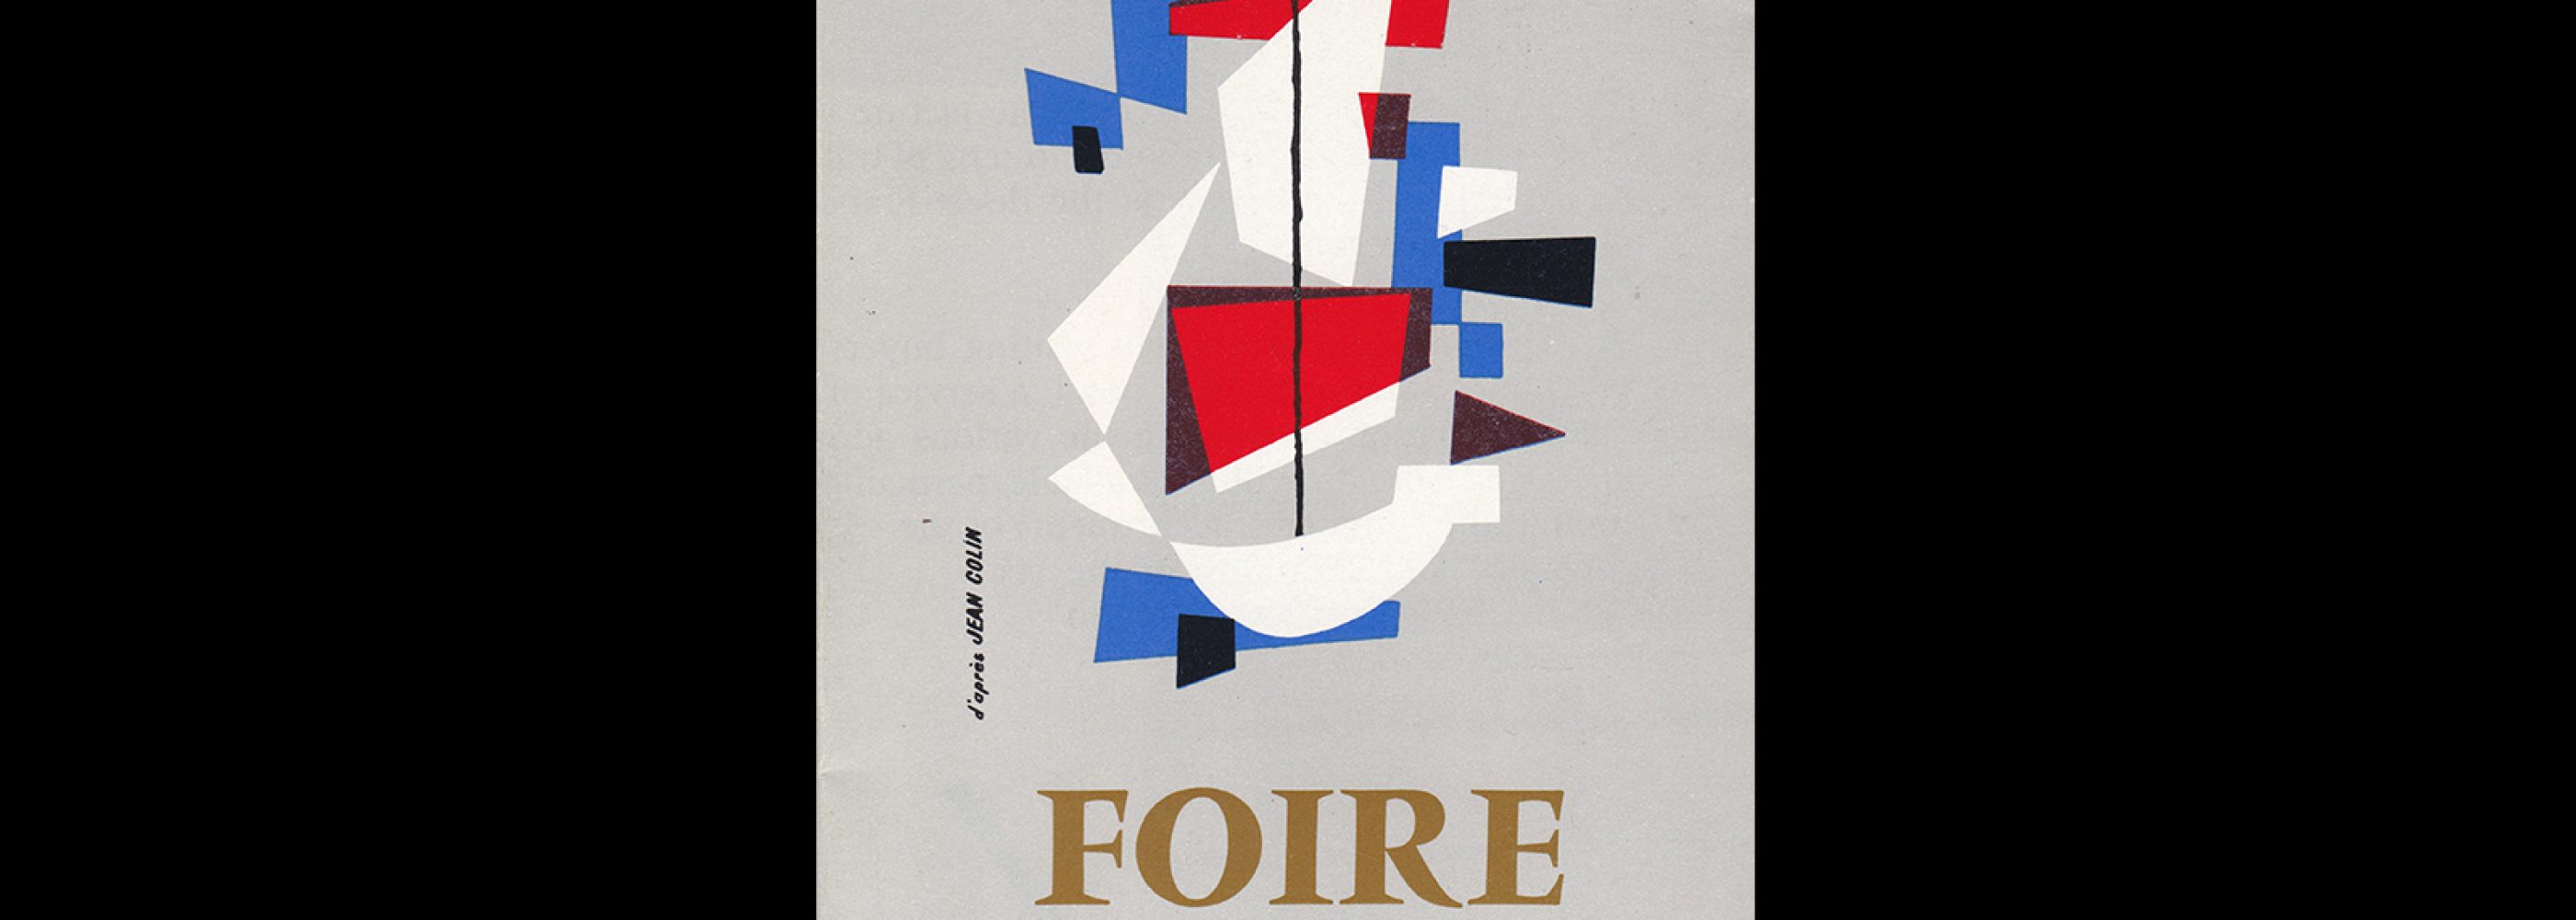 Foire de Paris (Paris International Trade Fair), 1960. Designed by Jean Colin.